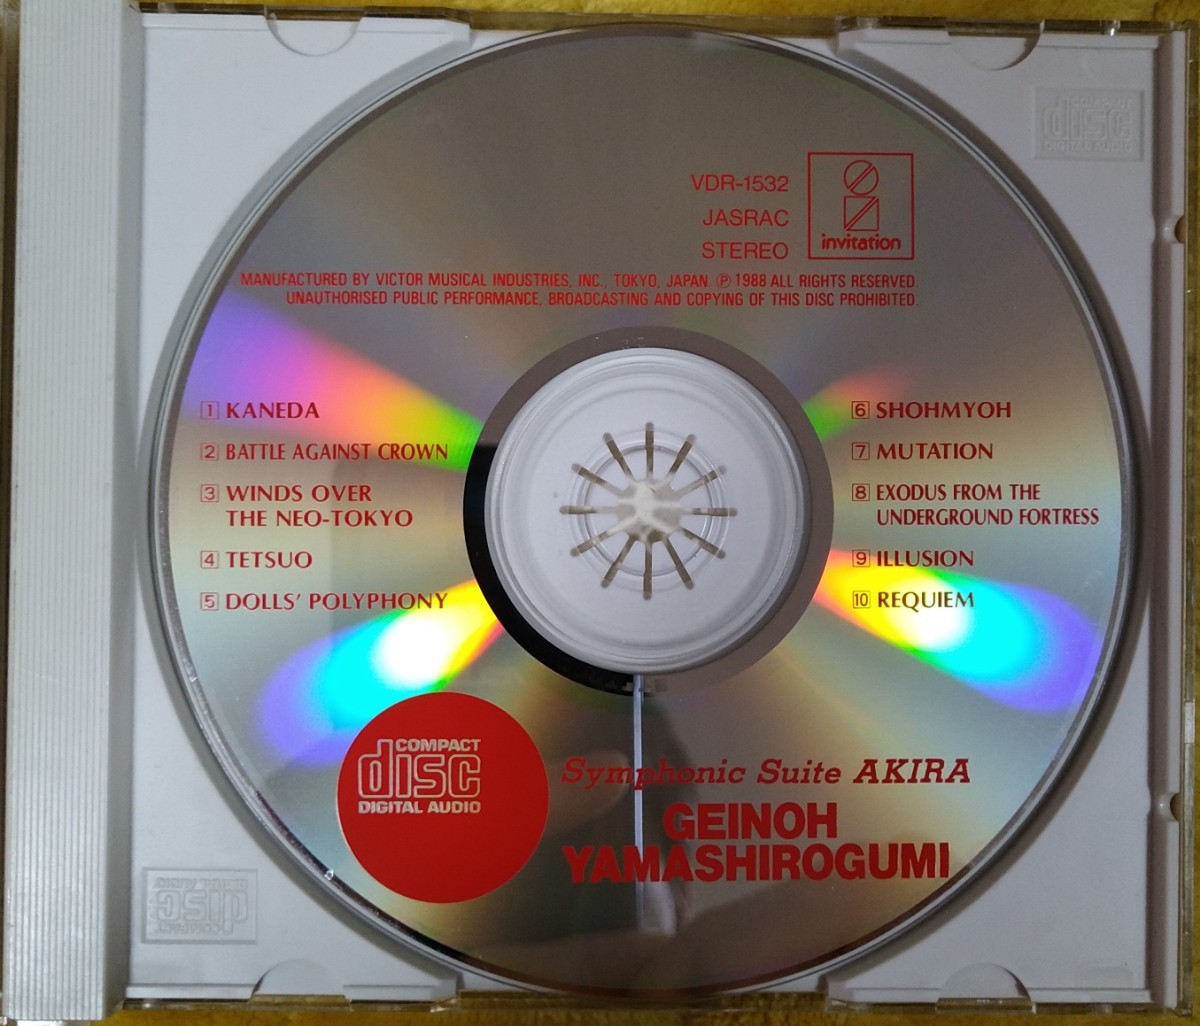 芸能山城組 Symphonic Suite AKIRA 廃盤国内盤中古CD geinoh yamashirogumi シンフォニック・スウィート アキラ 大友克洋 VDR-1532_画像3